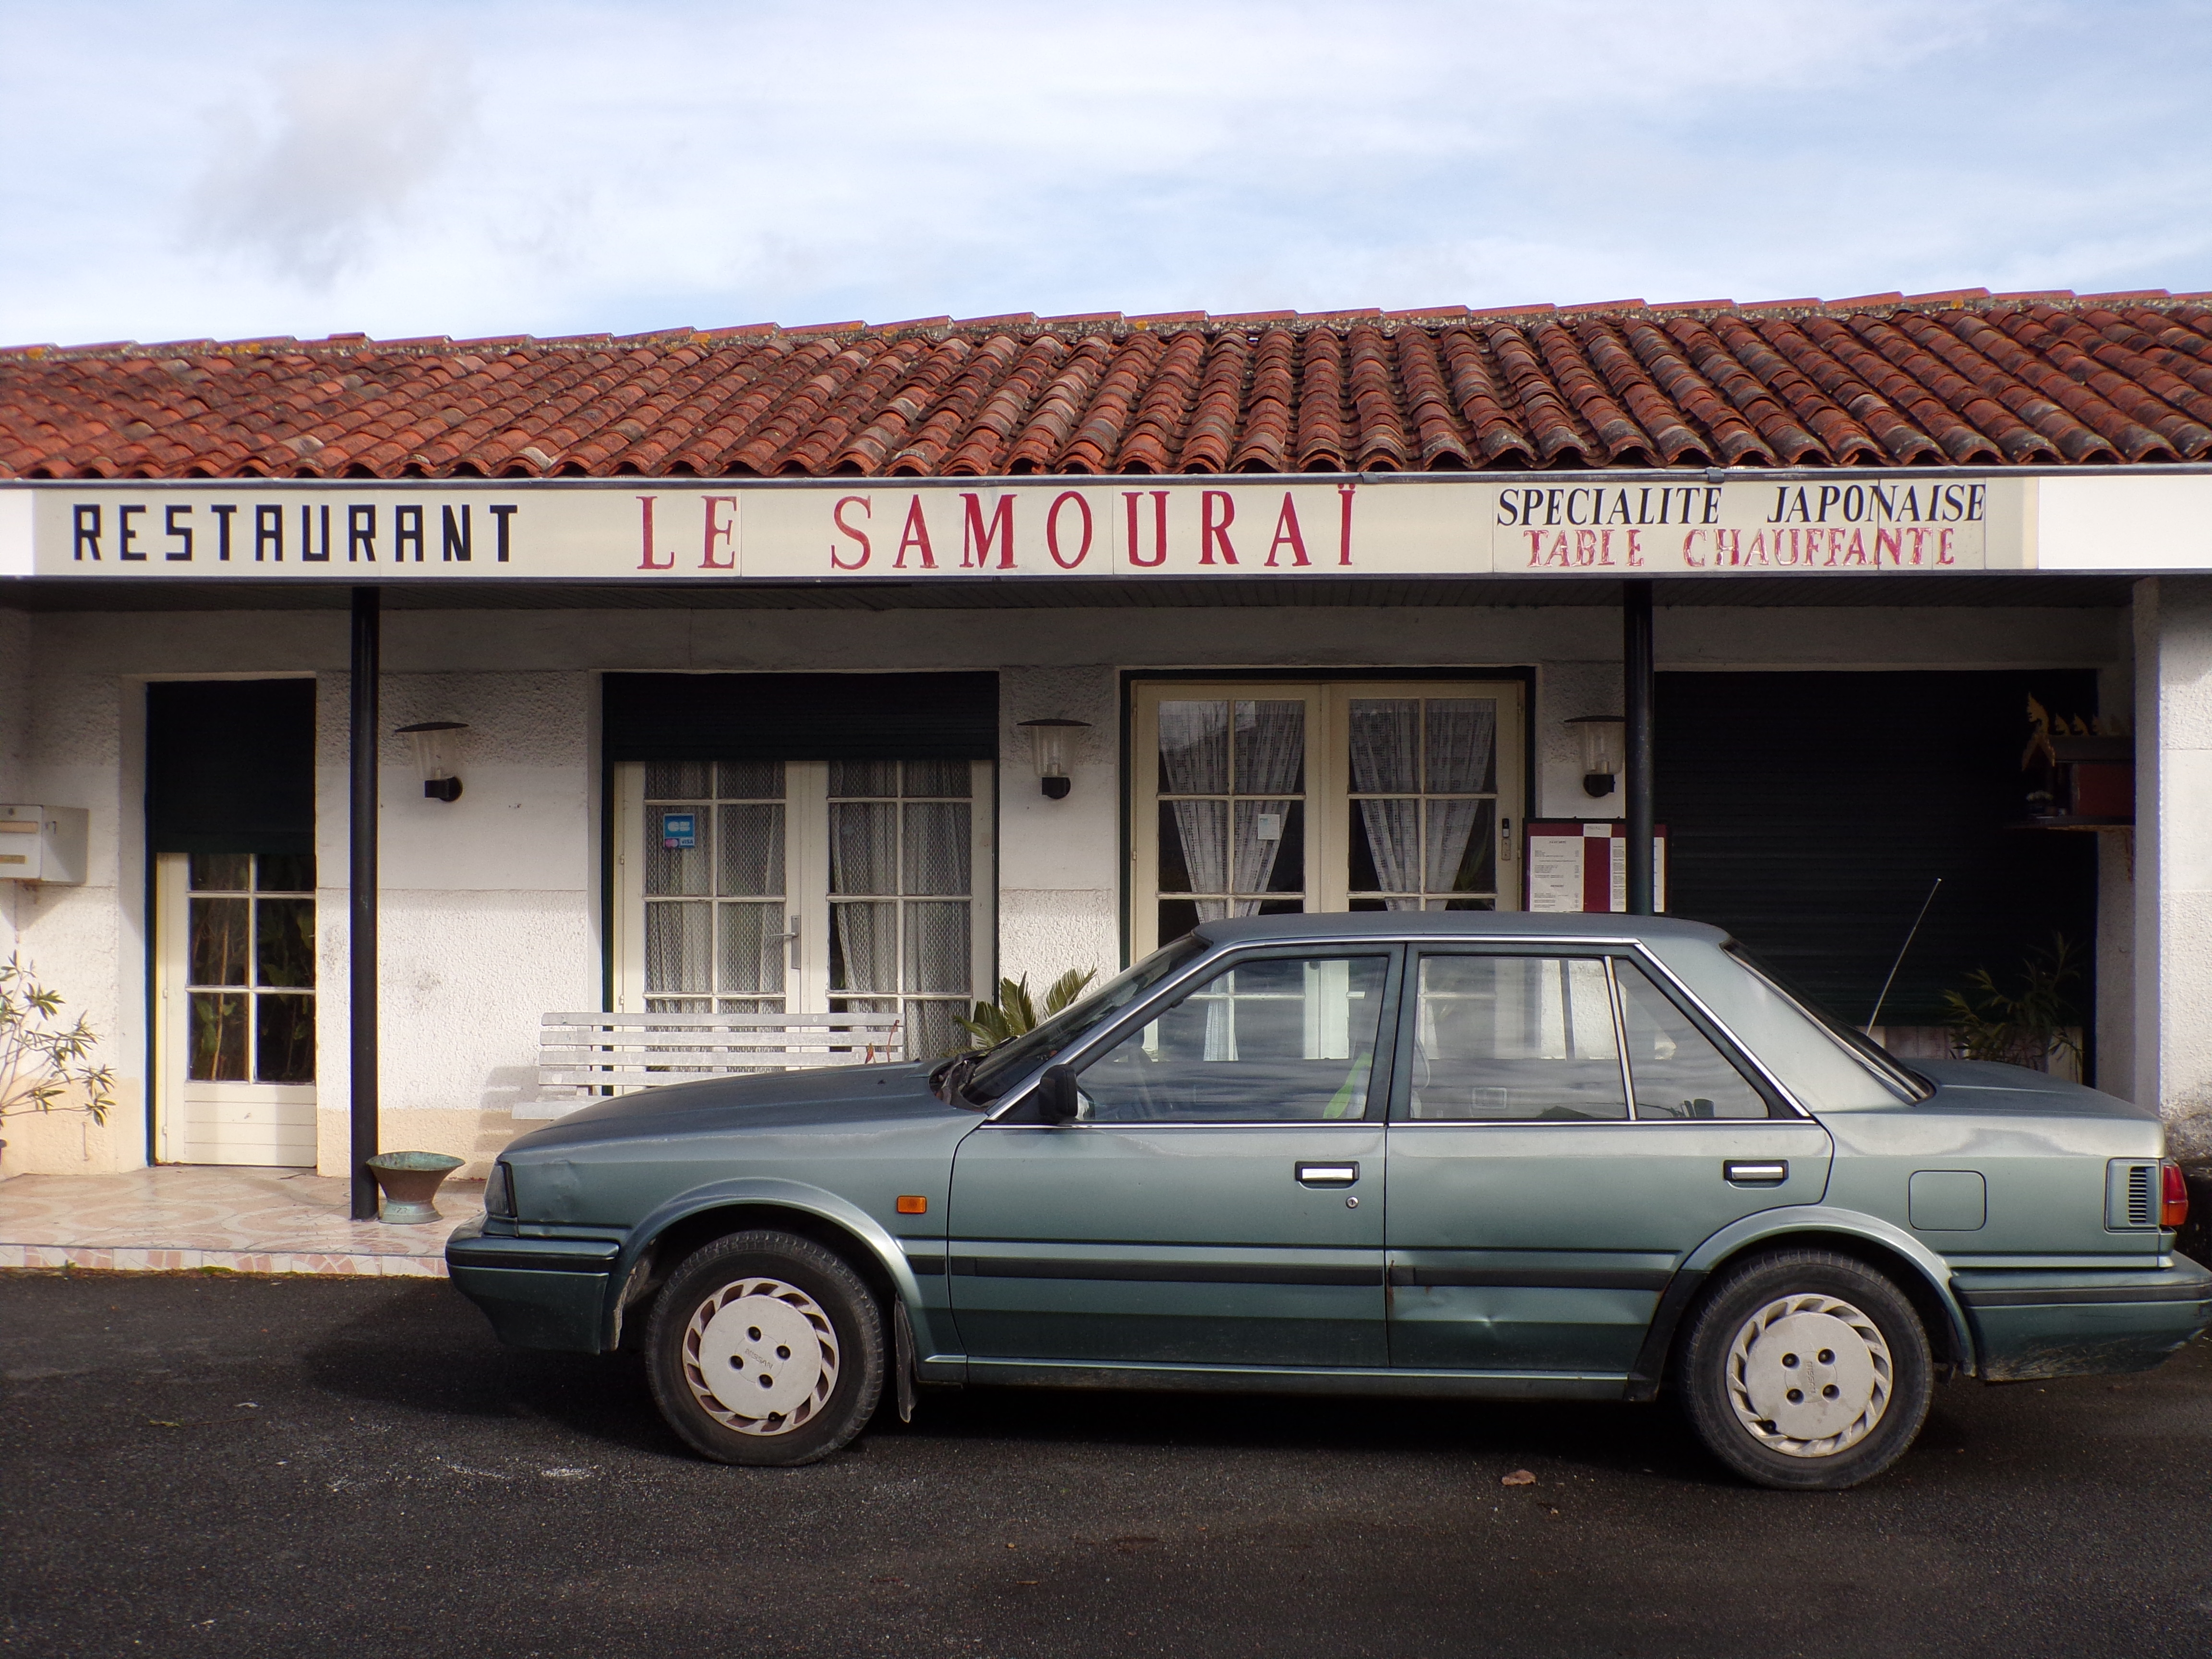 Le Samourai - Châteaubernard - avenue d'Angoulême (11 février 2019)